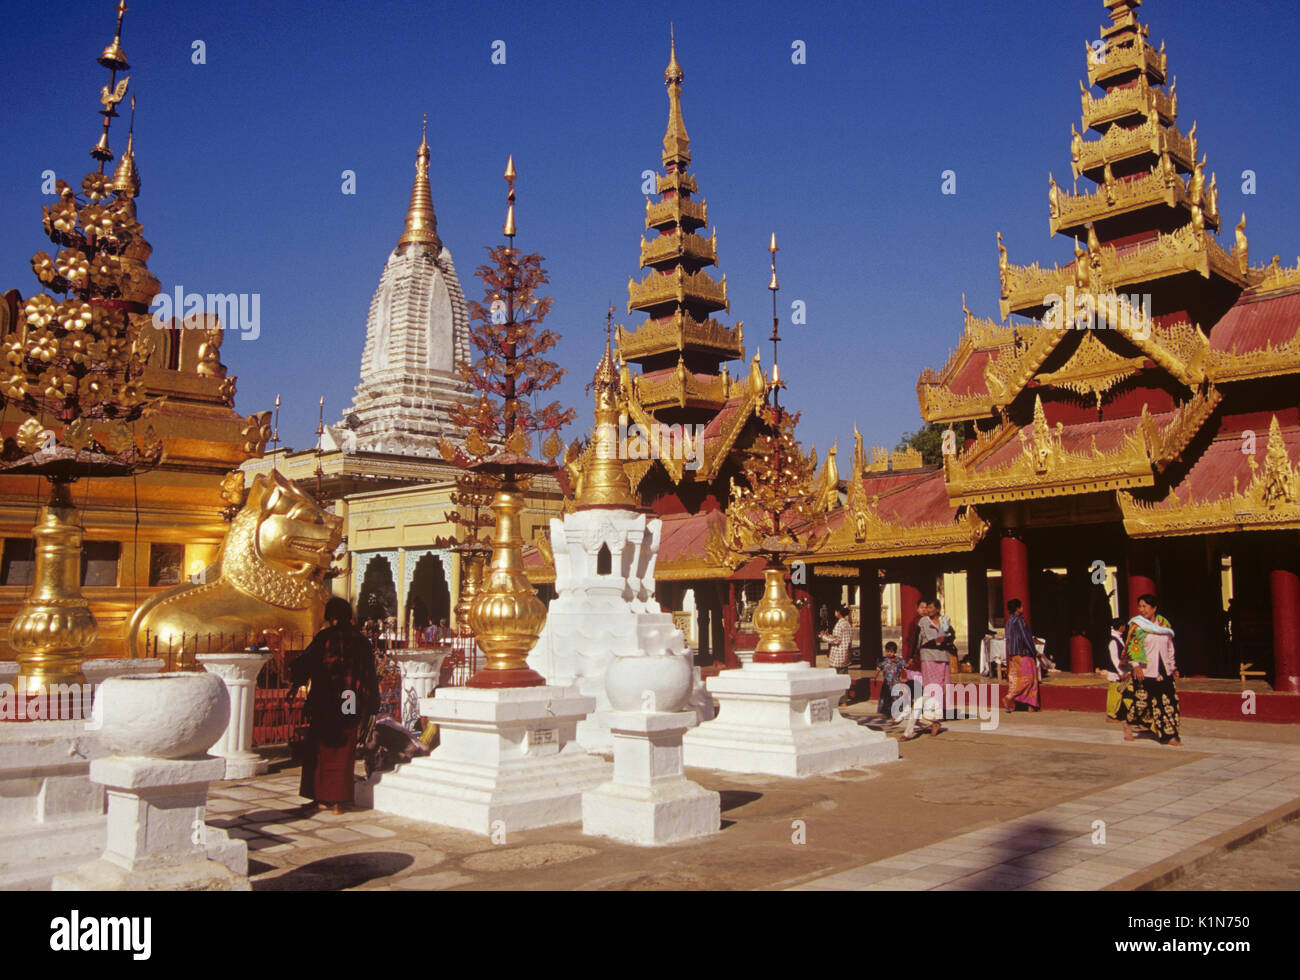 Santuarios y pabellones en el pagoda Shwezigon, pagano (Bagan), Birmania (Myanmar) Foto de stock